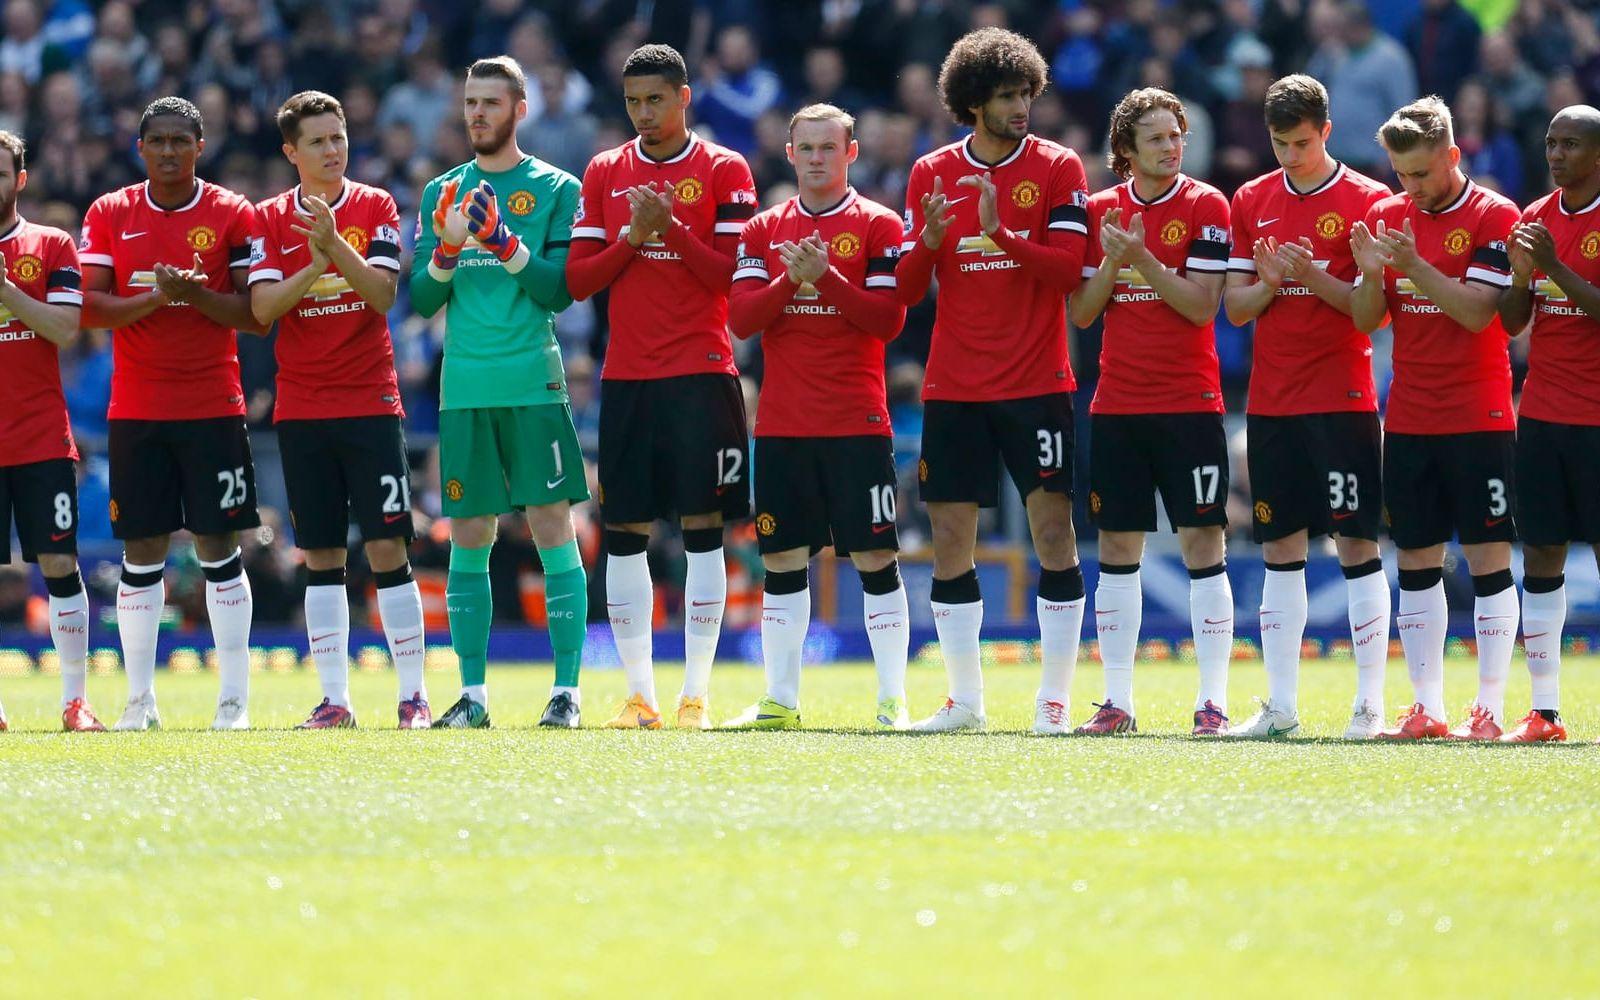 Spelarna i Manchester United under en tyst minut inför matchen mot Everton i maj 2015, 30 år efter branden i Bradford. Foto: Bildbyrån